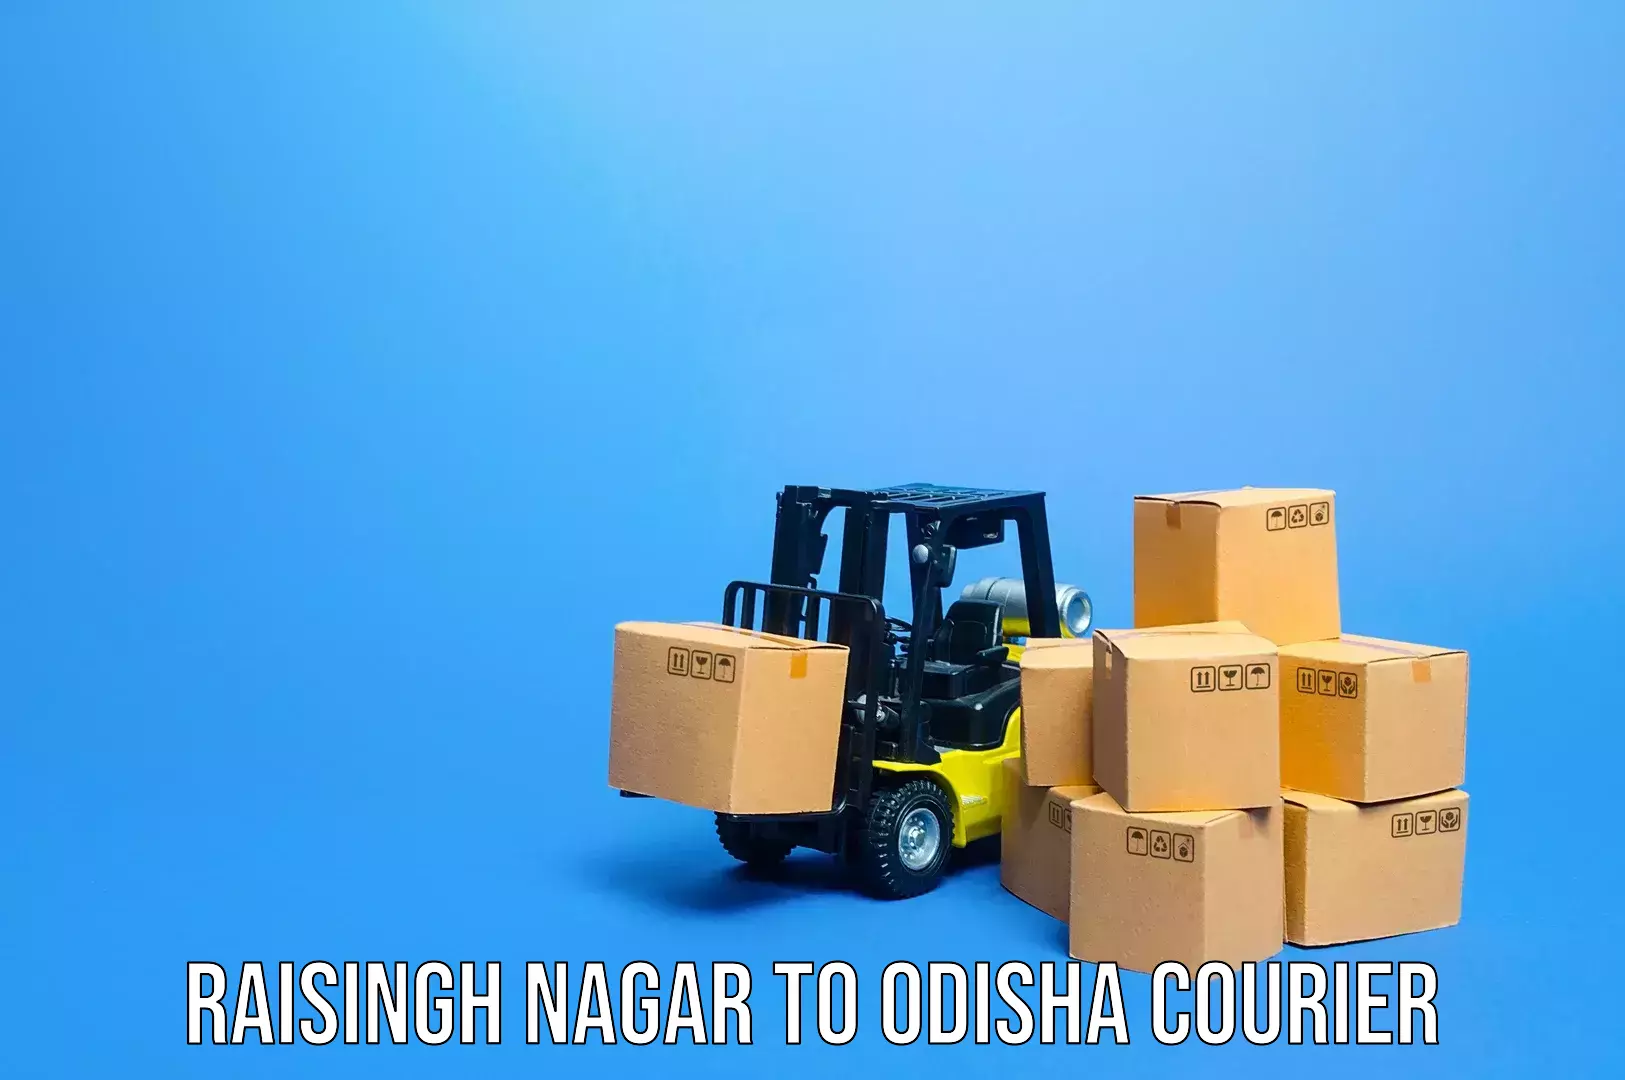 Luggage shipping estimate Raisingh Nagar to Bhubaneswar